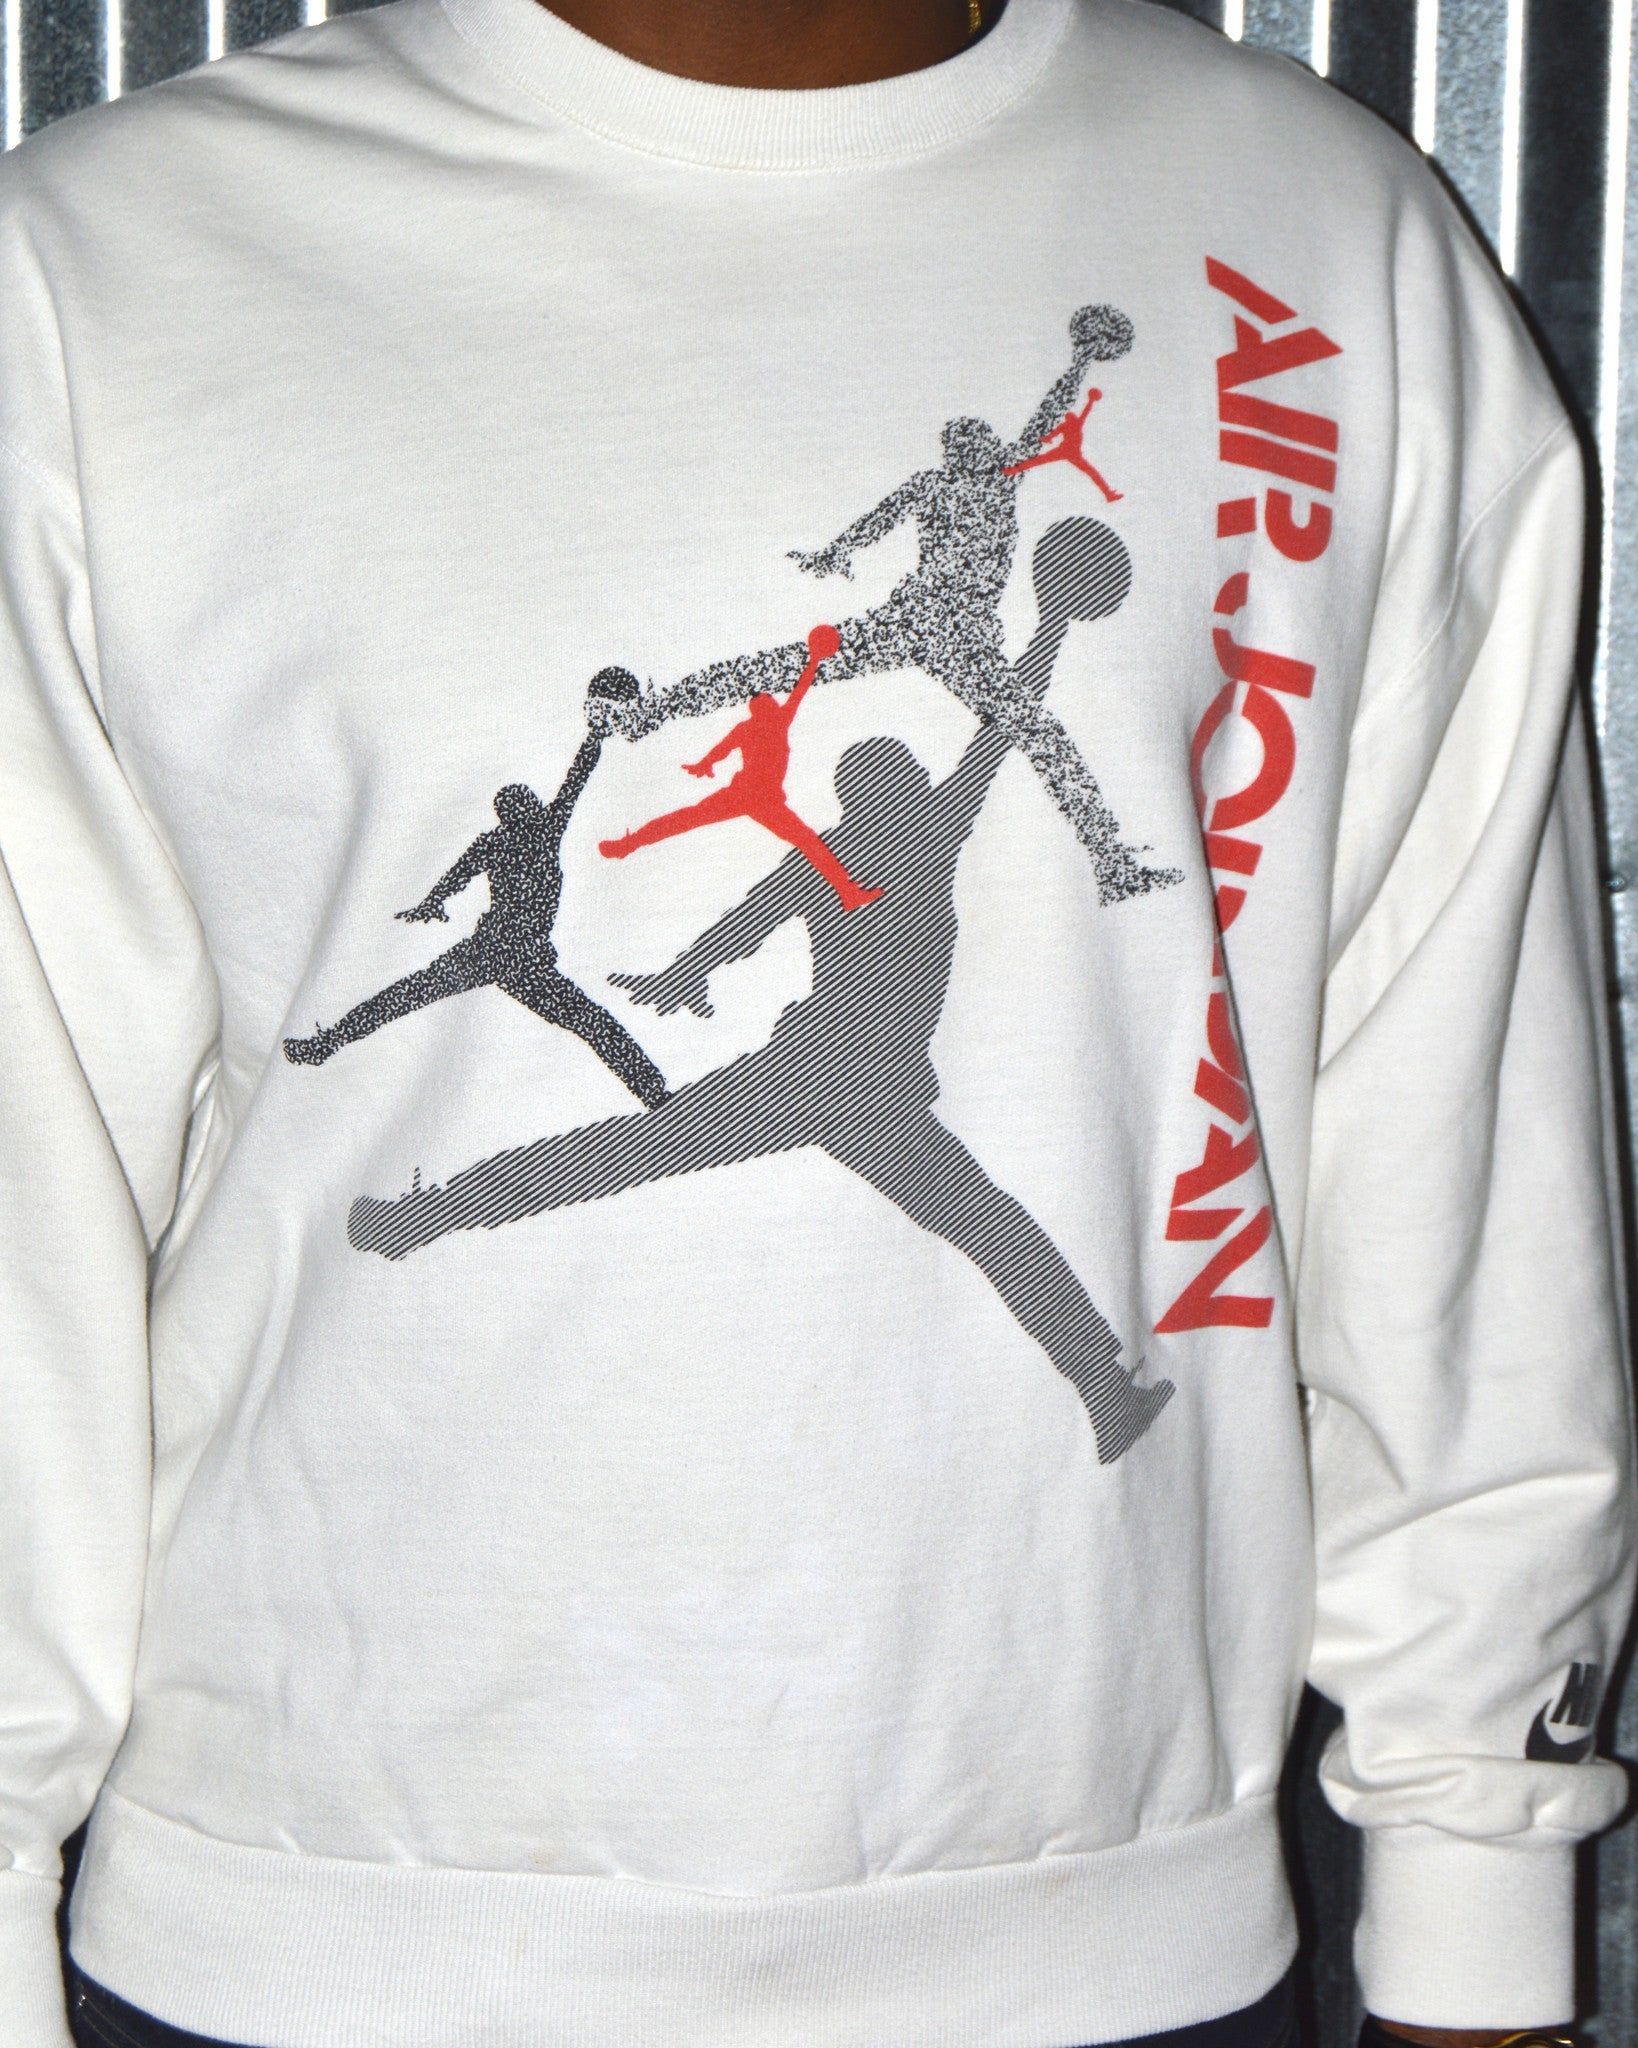 Vintage Nike Air Jordan White Sweatshirt Sz L – PeoplesVintage